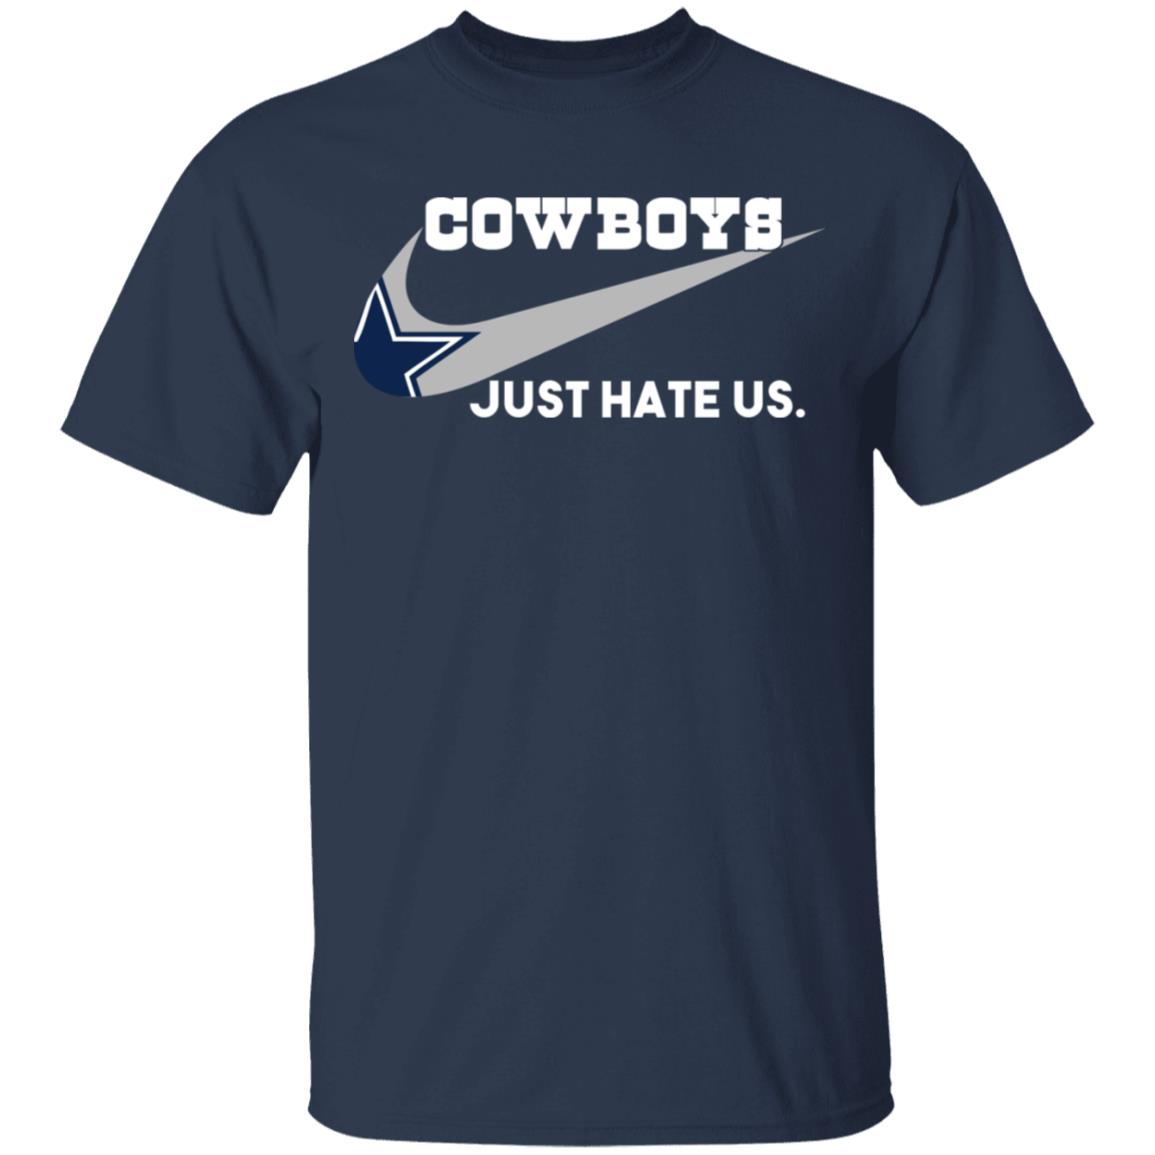 4t dallas cowboys shirts